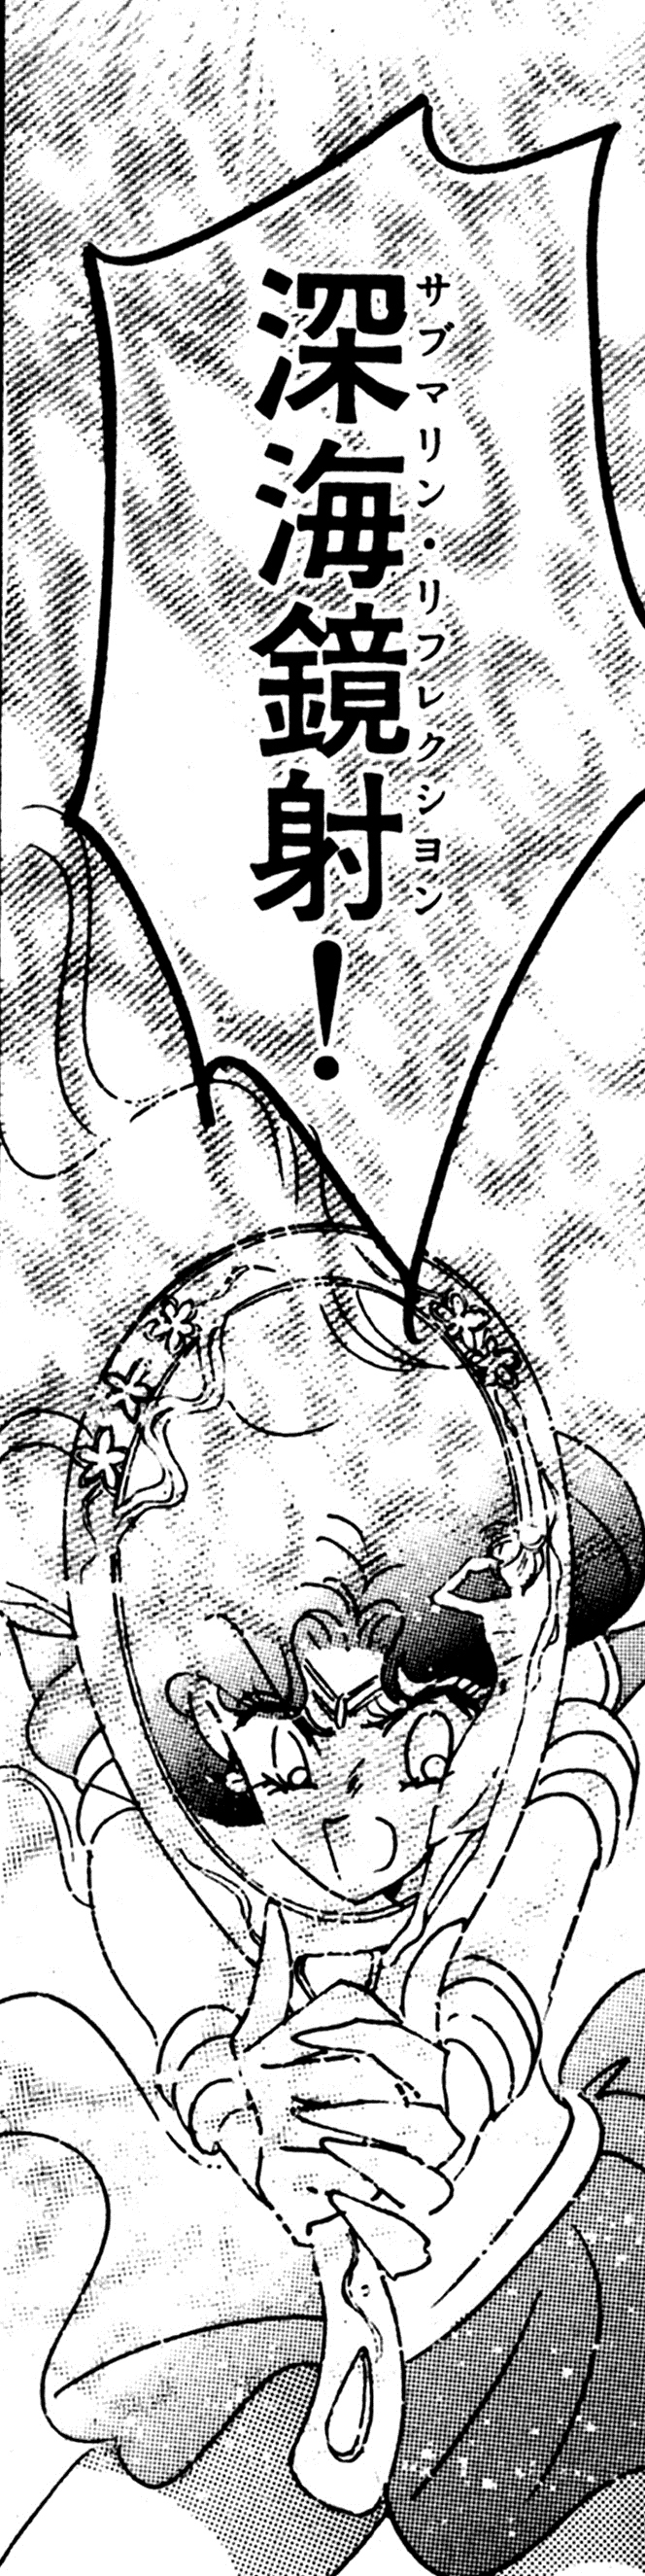 漫畫版中水手海王星的絕招深海鏡射